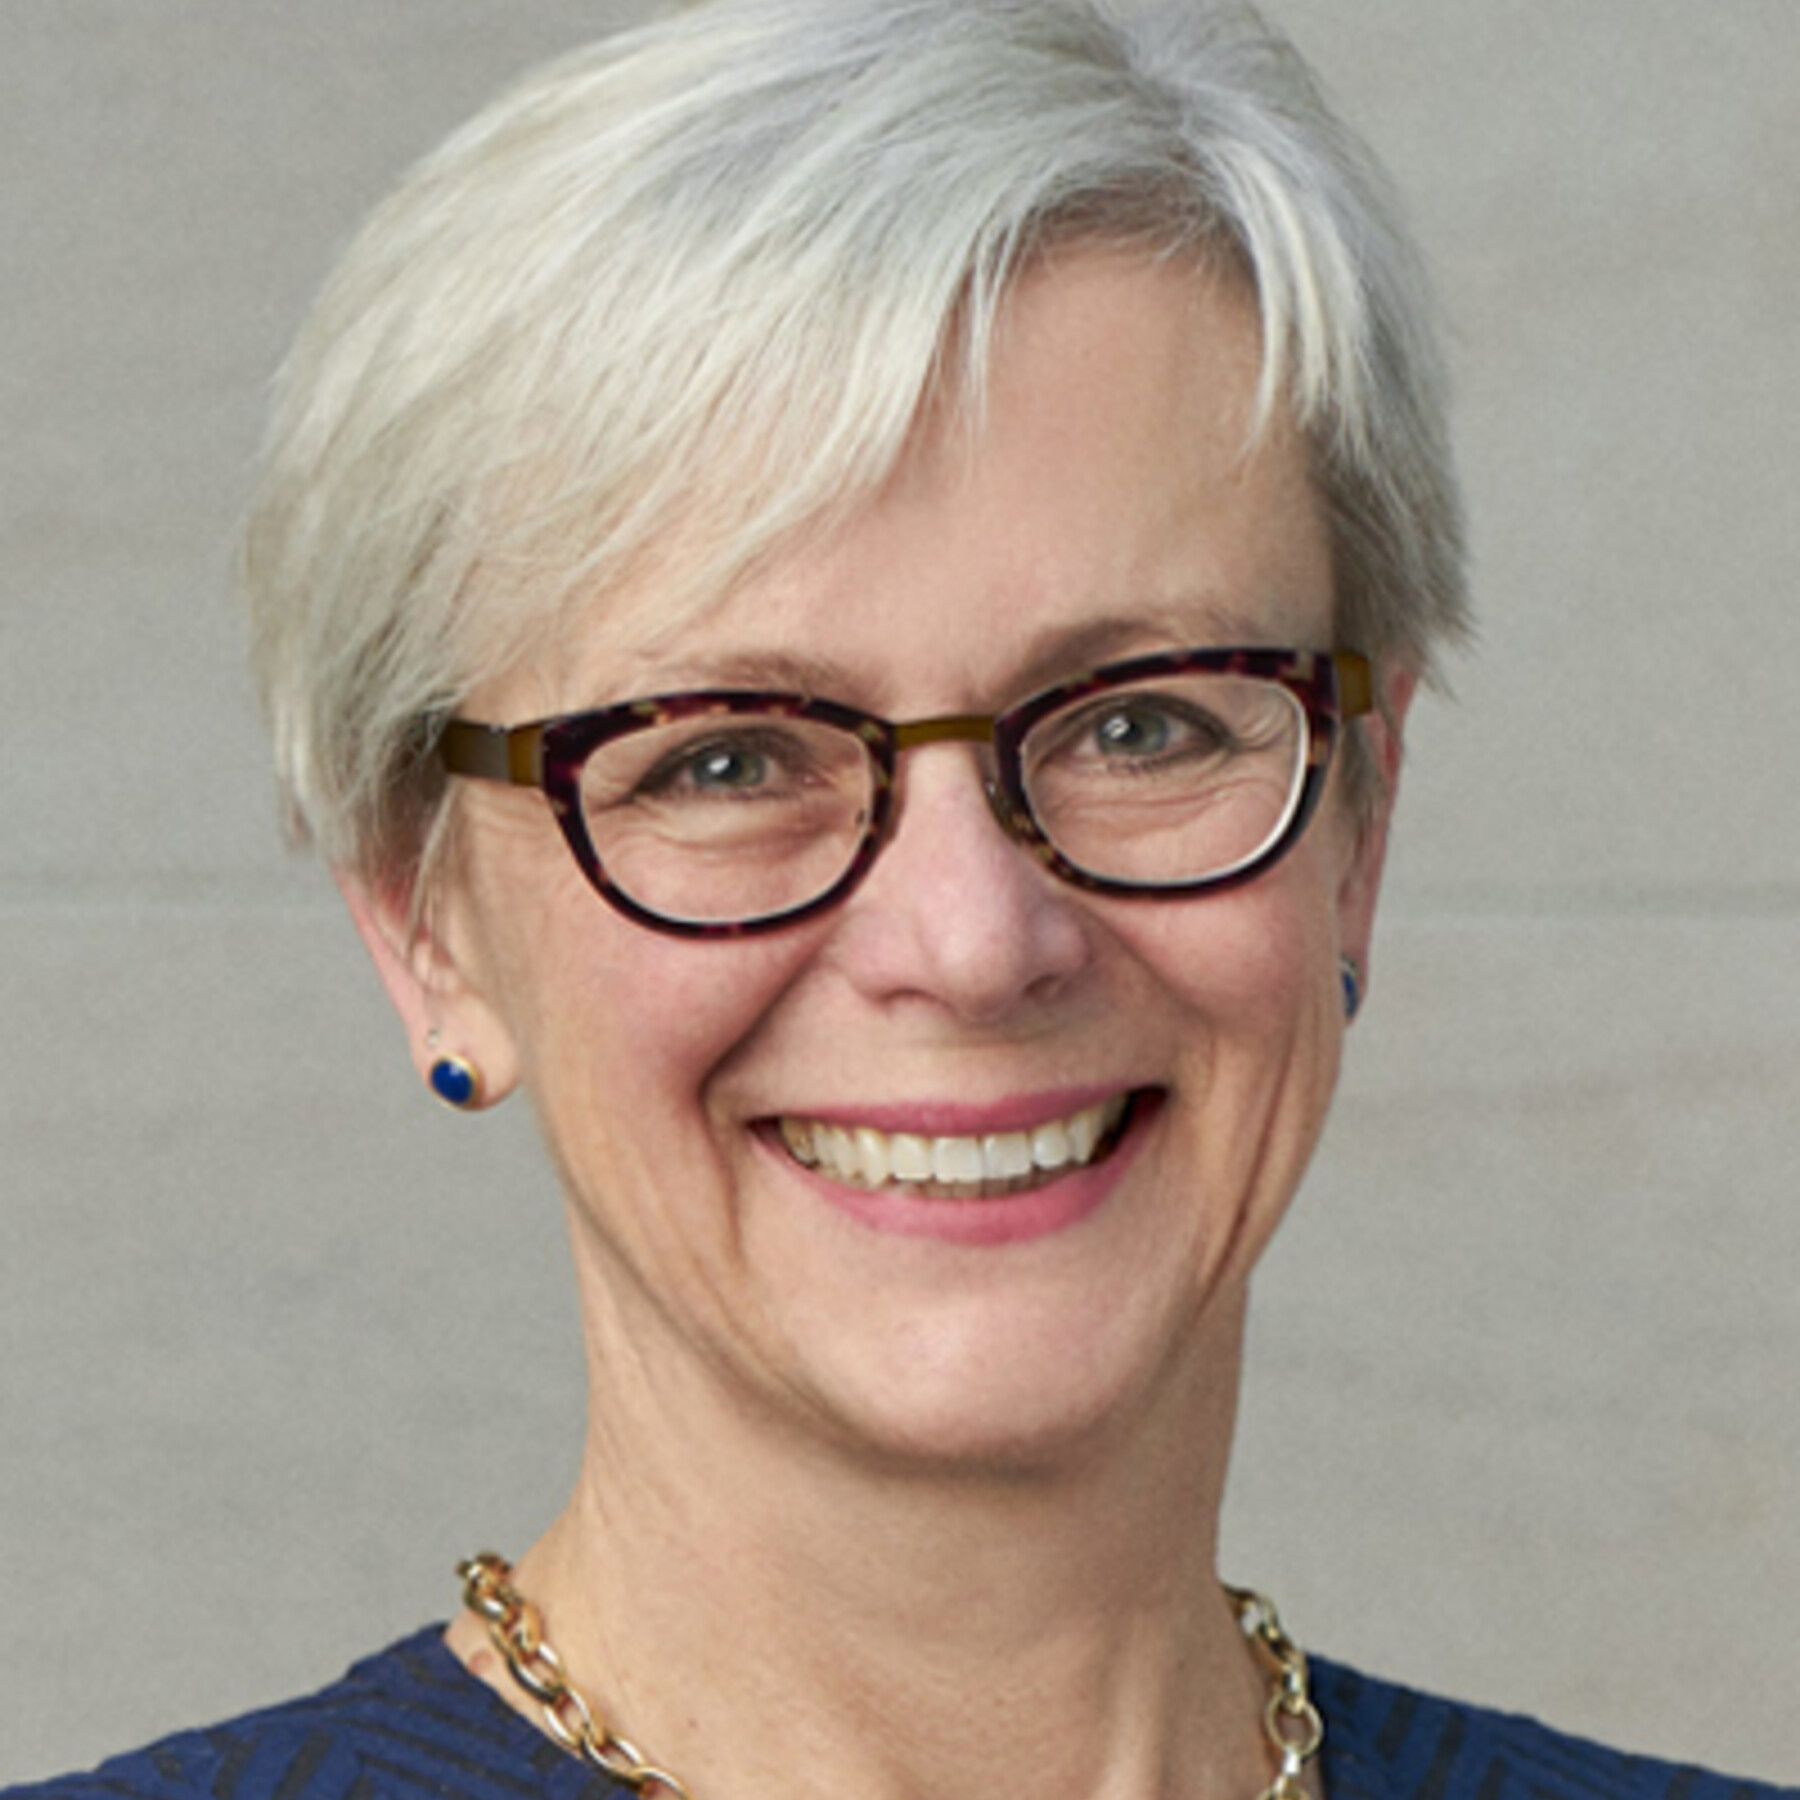 Photograph of Dr. Heidi Schmidt